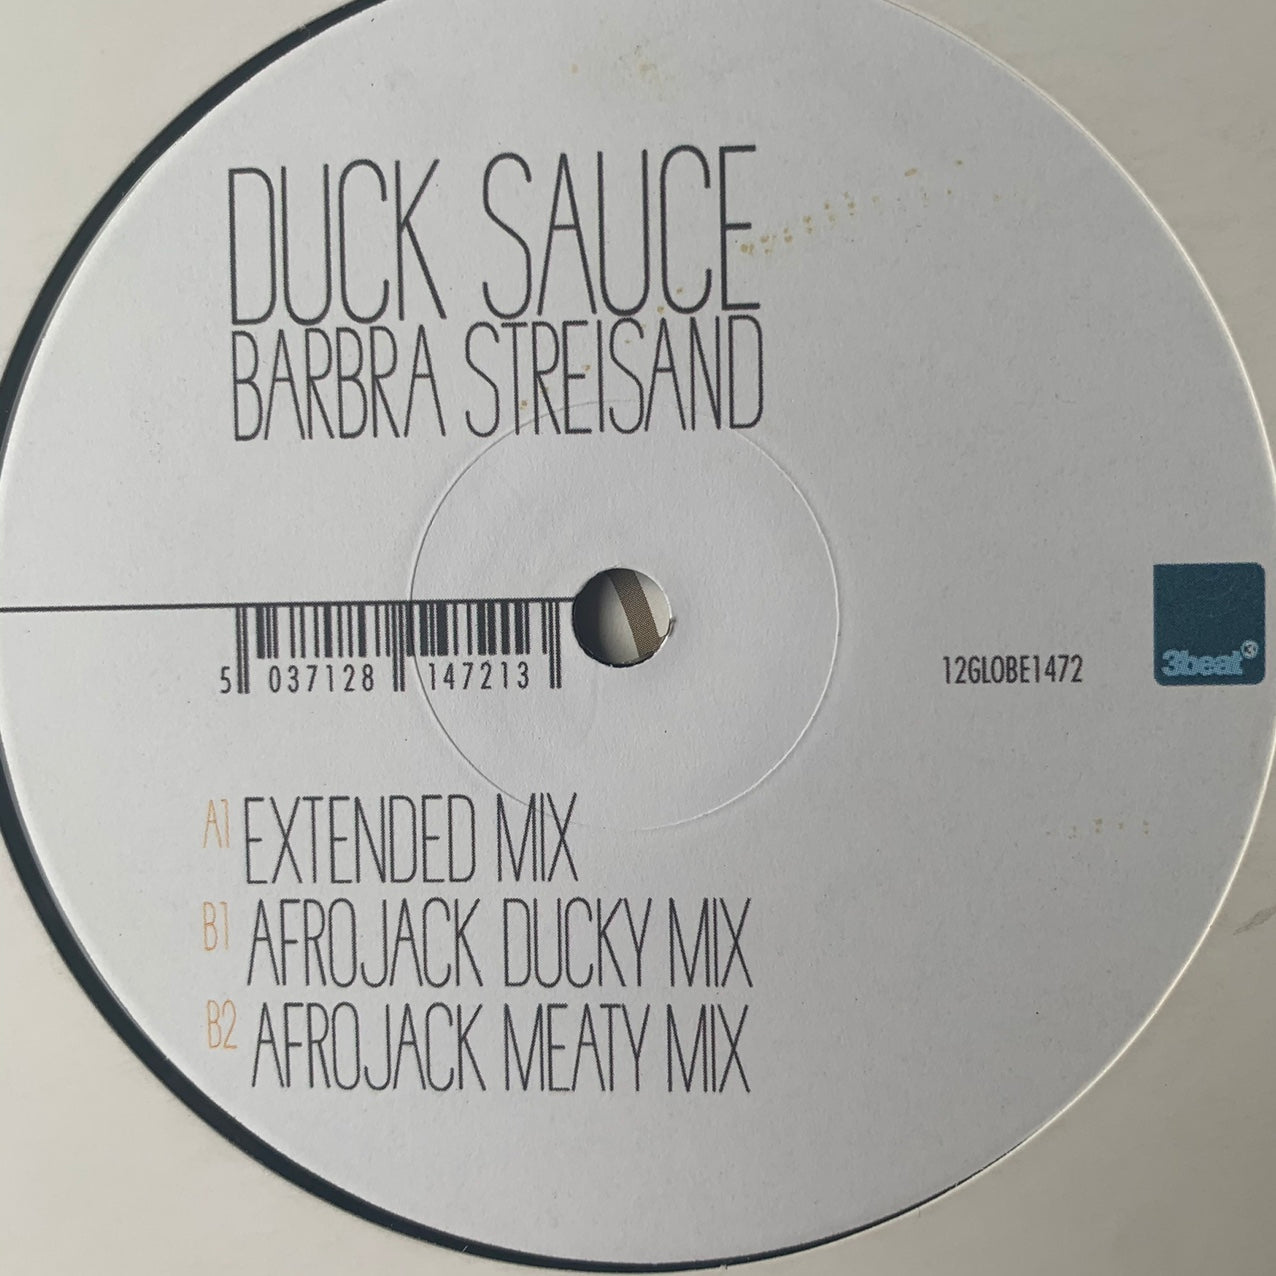 Armand Van Helden & A-Trak Present Duck Sauce “Barbra Streisand” 3 Version 12inch Vinyl